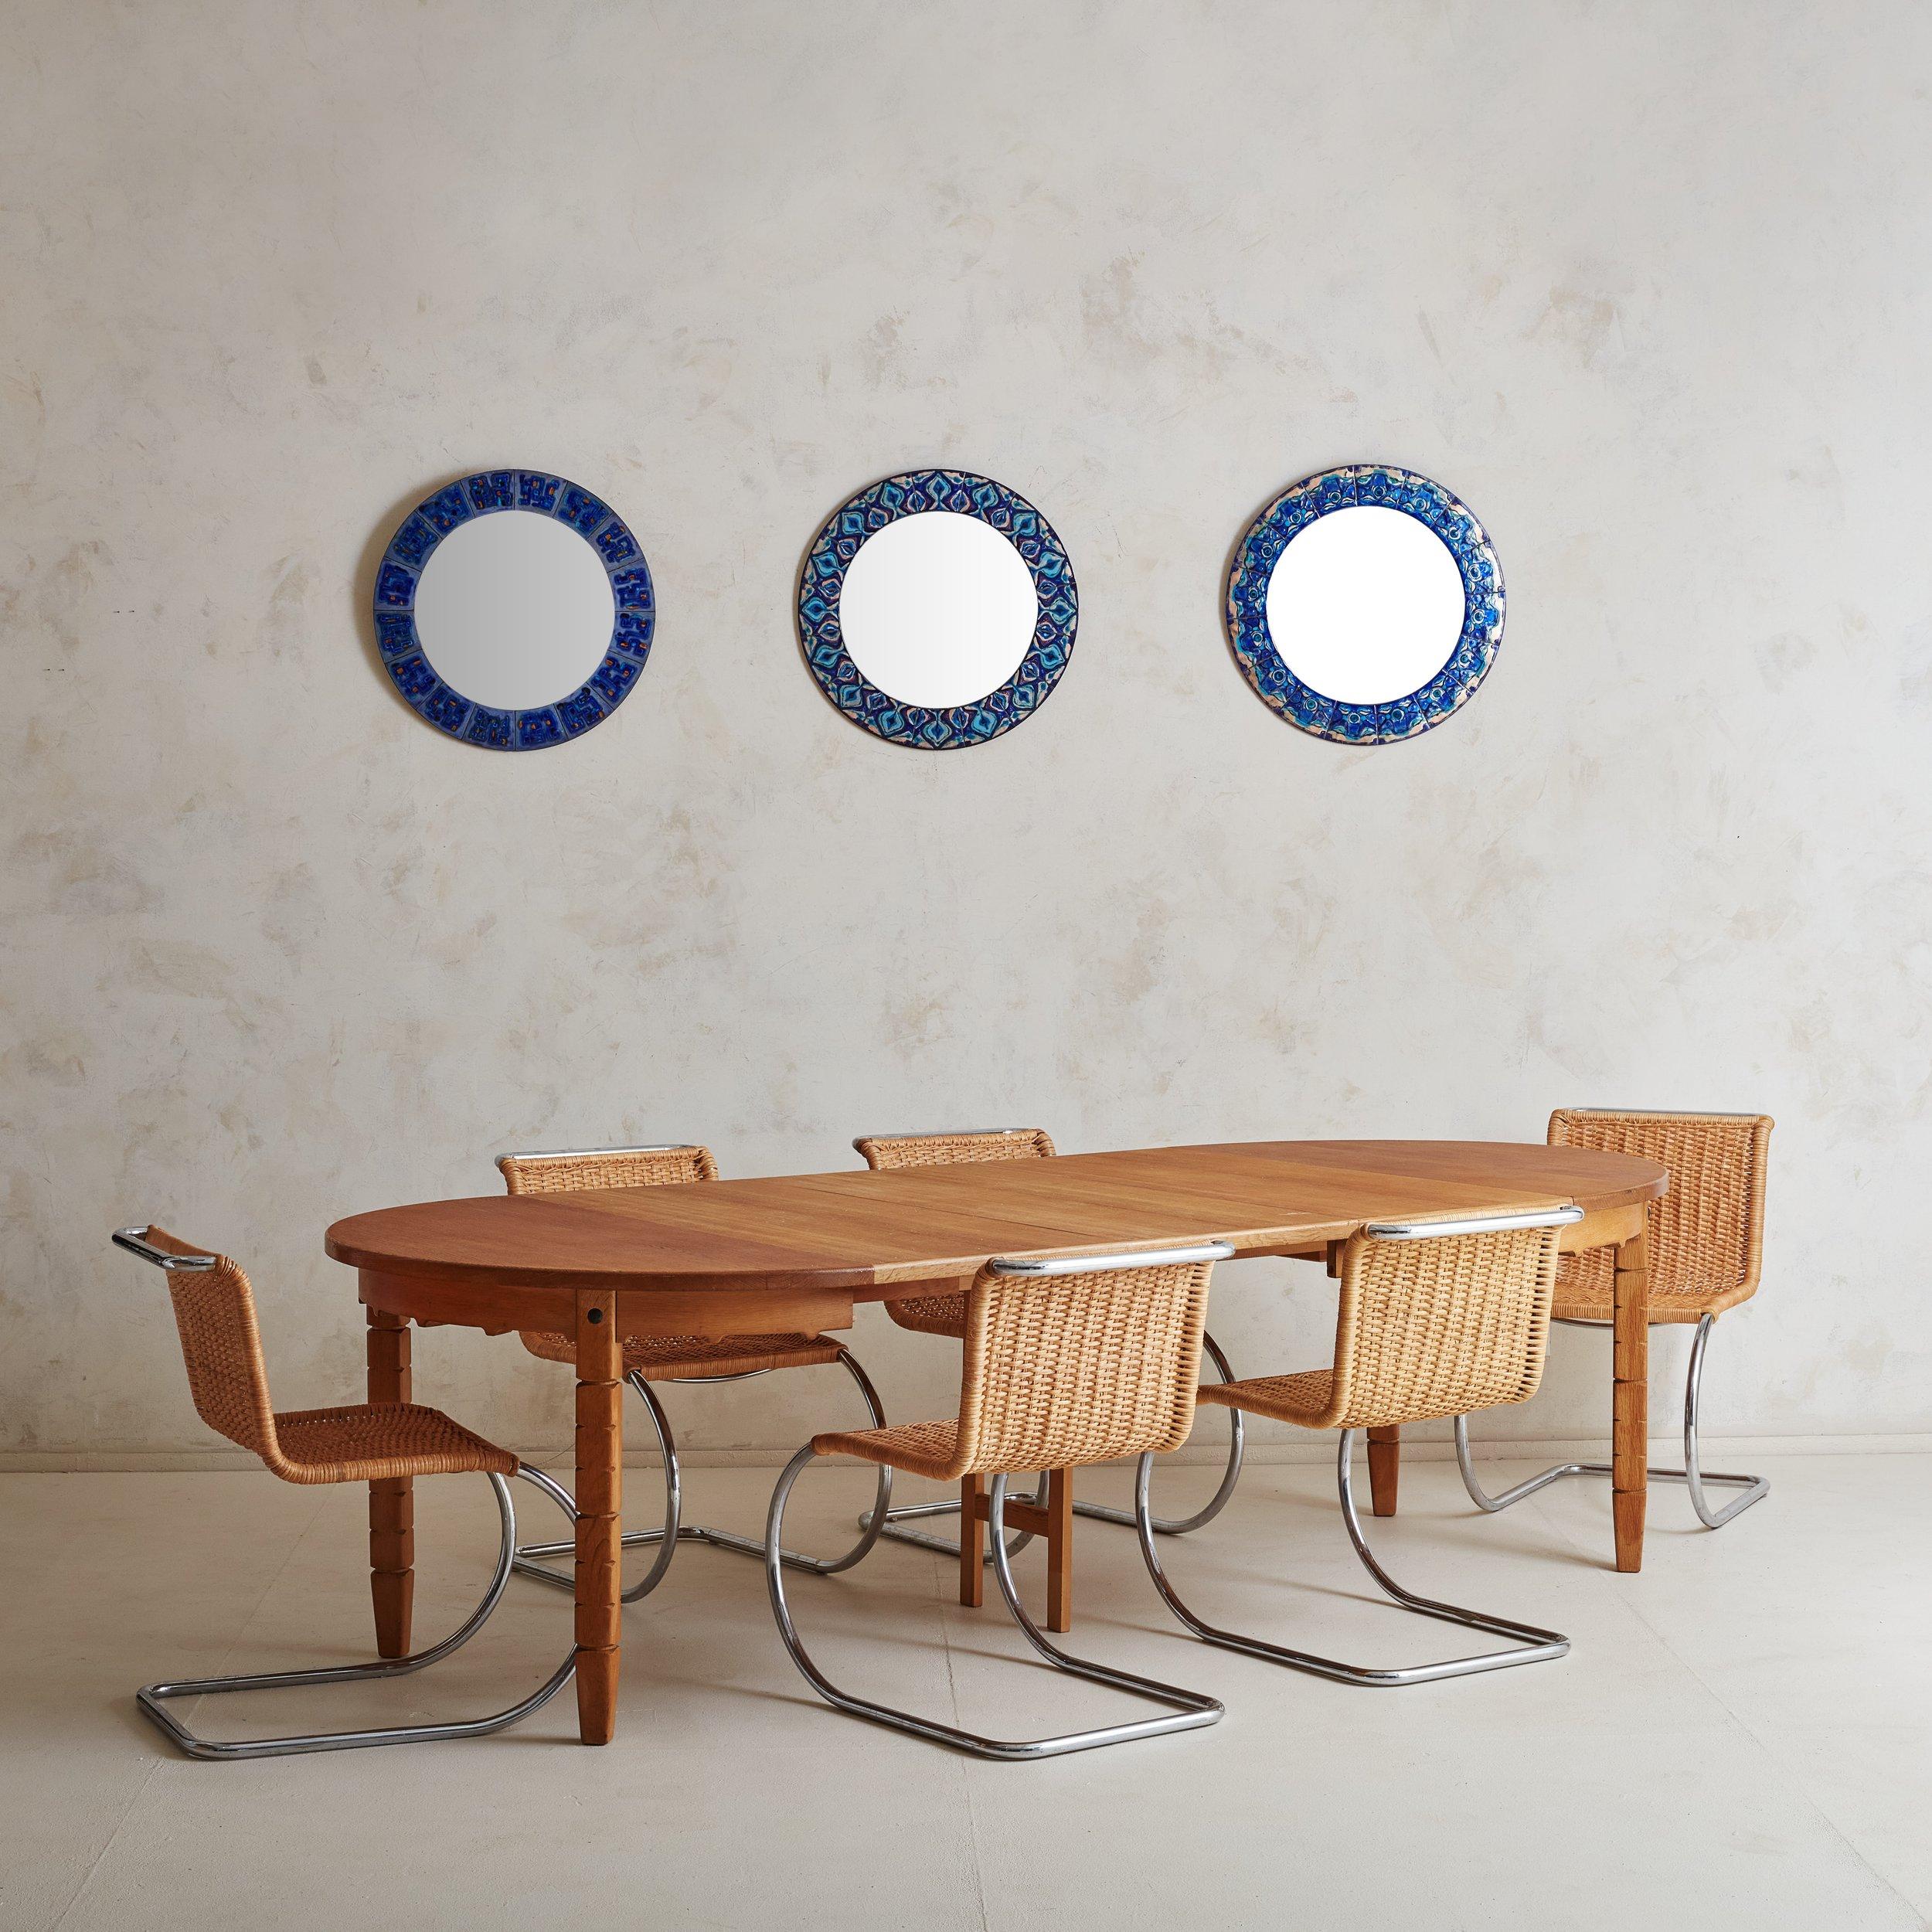 Ein ausziehbarer Esstisch aus Eiche von 1964, der dem dänischen Möbeldesigner Henning Kjærnulf zugeschrieben wird. Dieser Scandinavian Modern Esstisch ist aus massiver Eiche in einem warmen, honigfarbenen Finish gefertigt und verfügt über eine